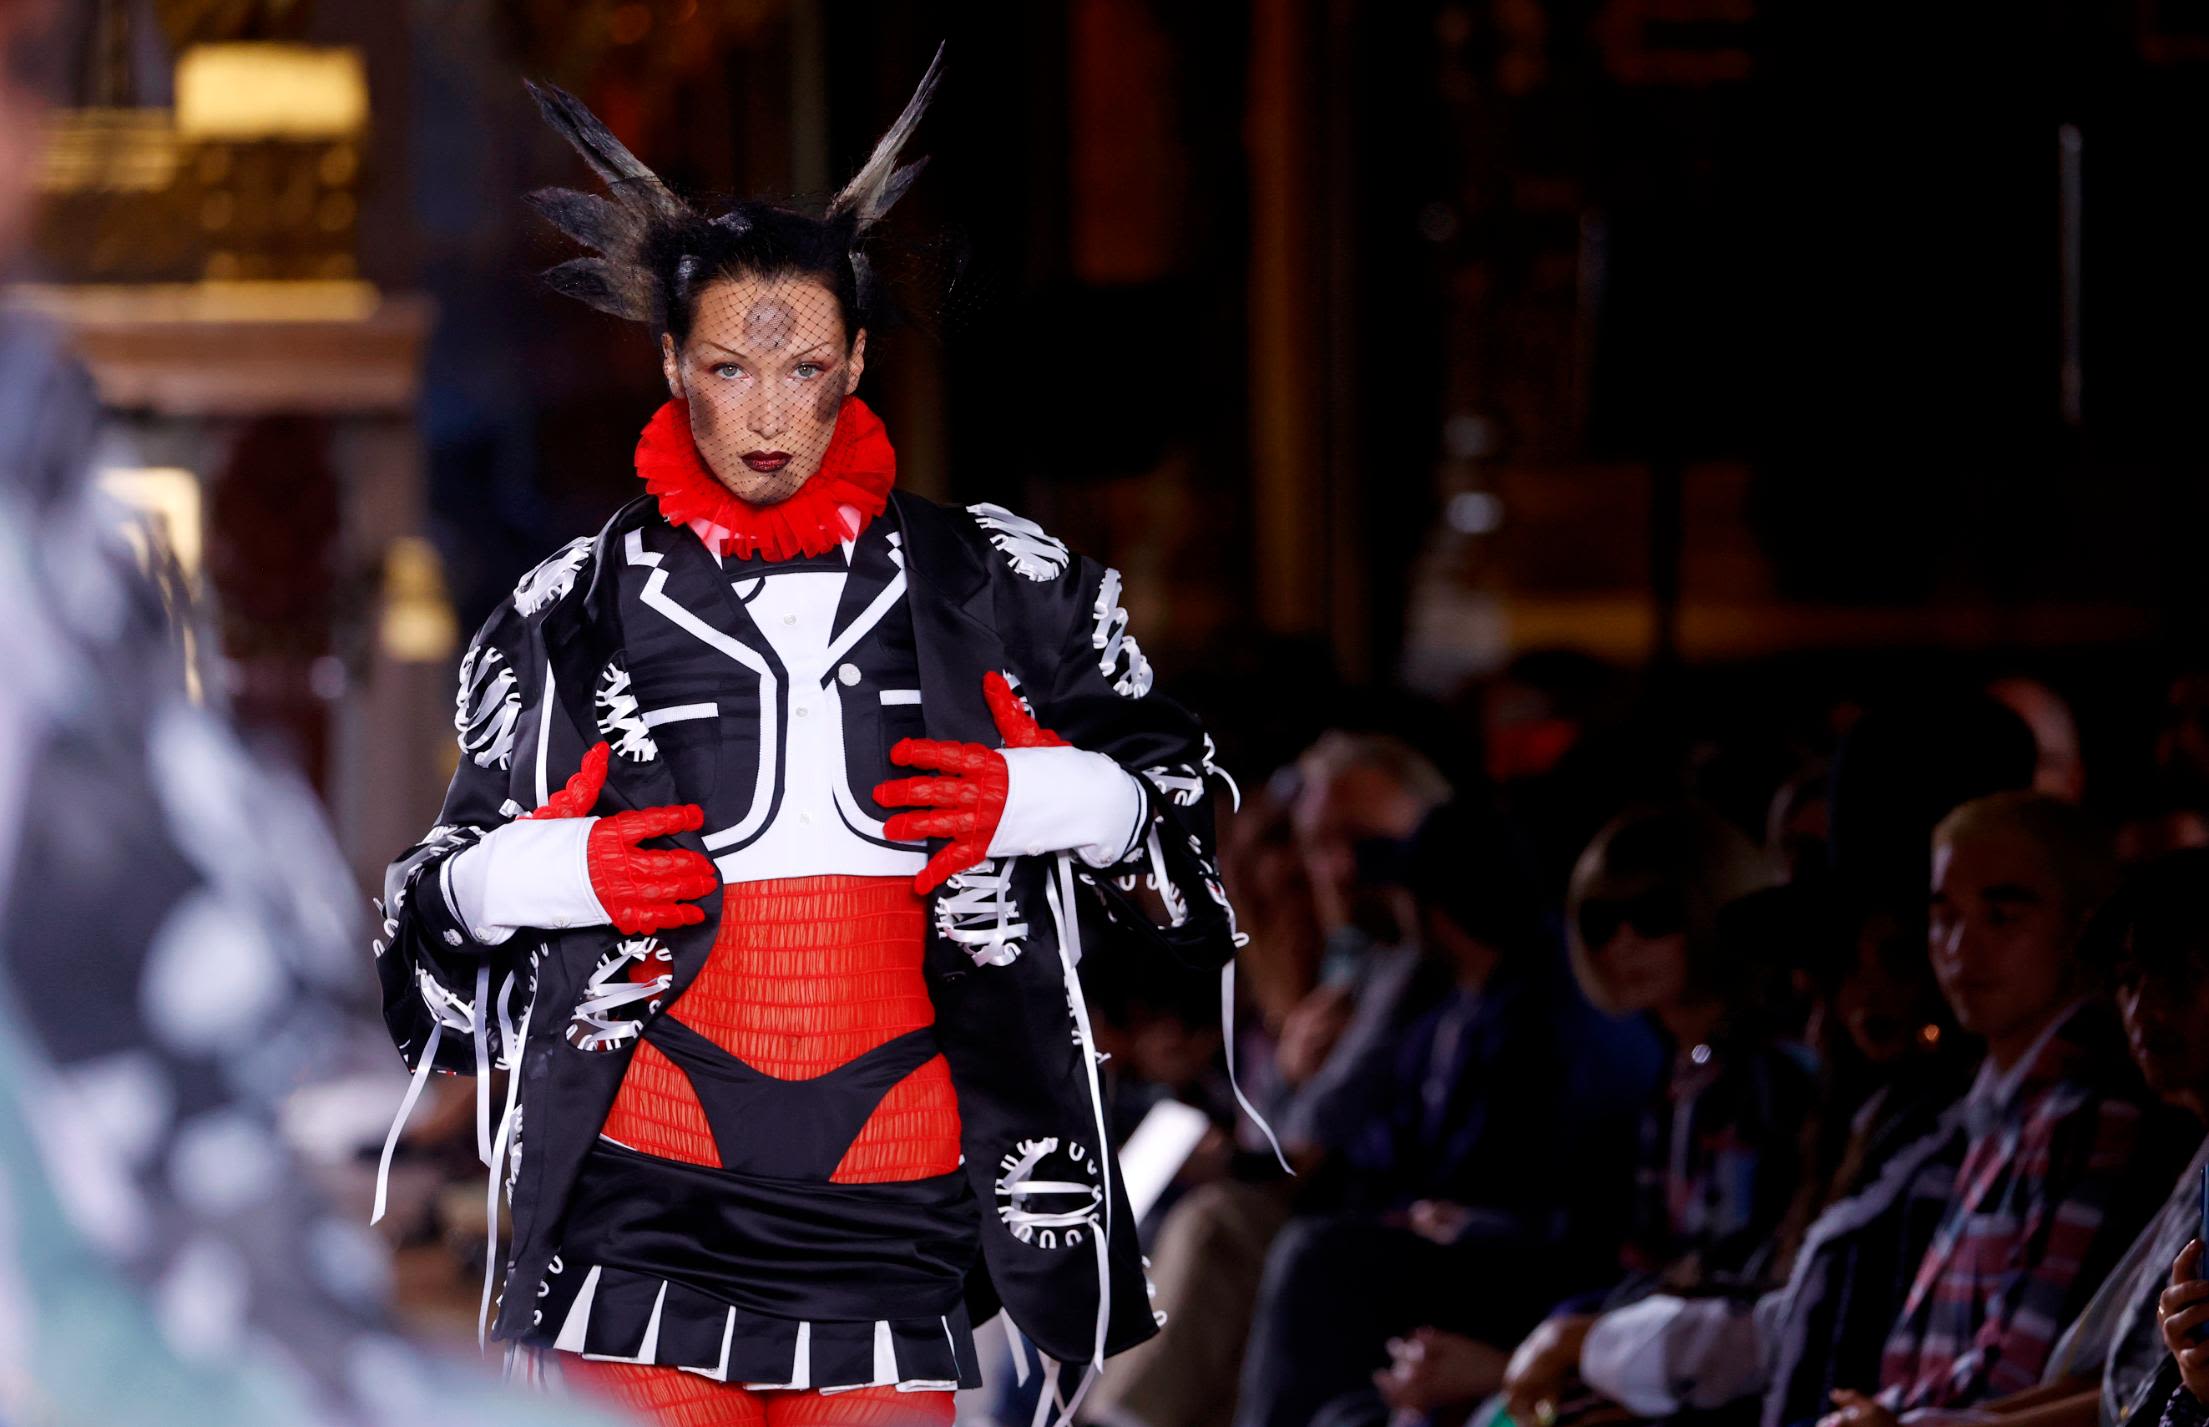 Paris Fashion Week: A Fountain of Bag Creativity - The New York Times